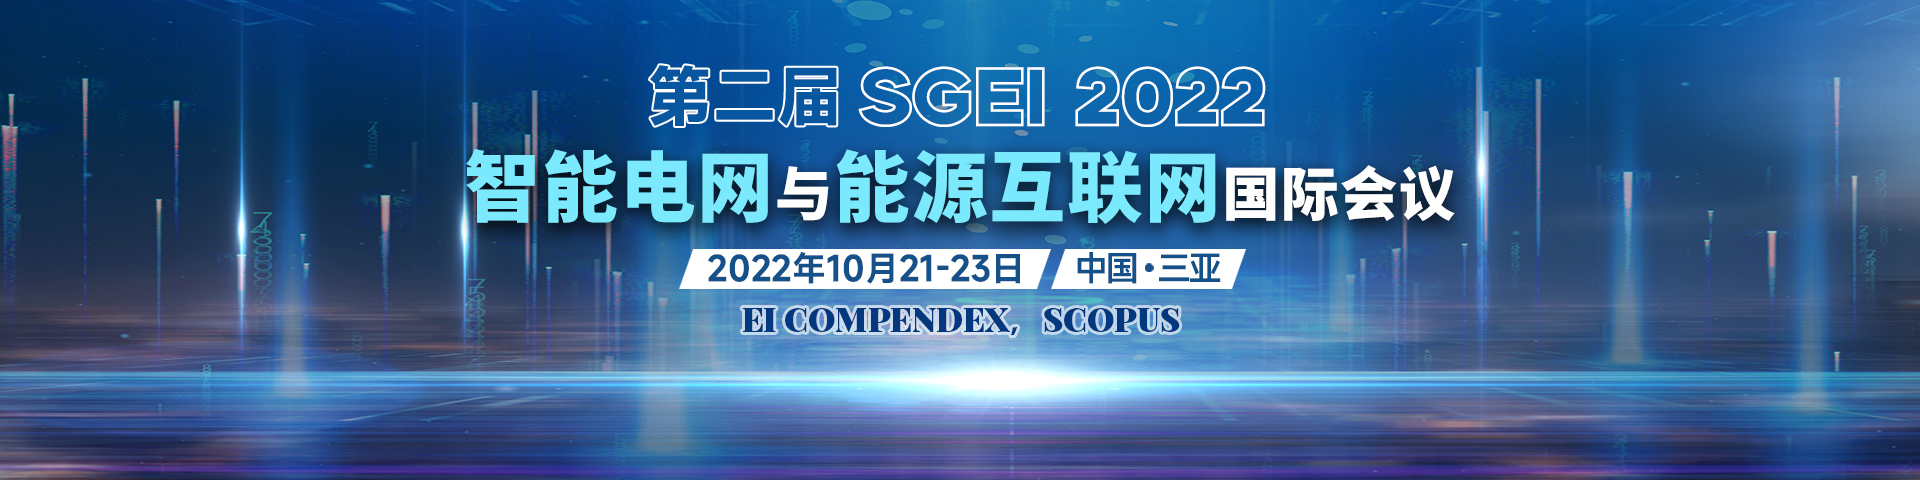 10月-三亚-SGEI-艾思平台上线平台1920X480无主办方.jpg